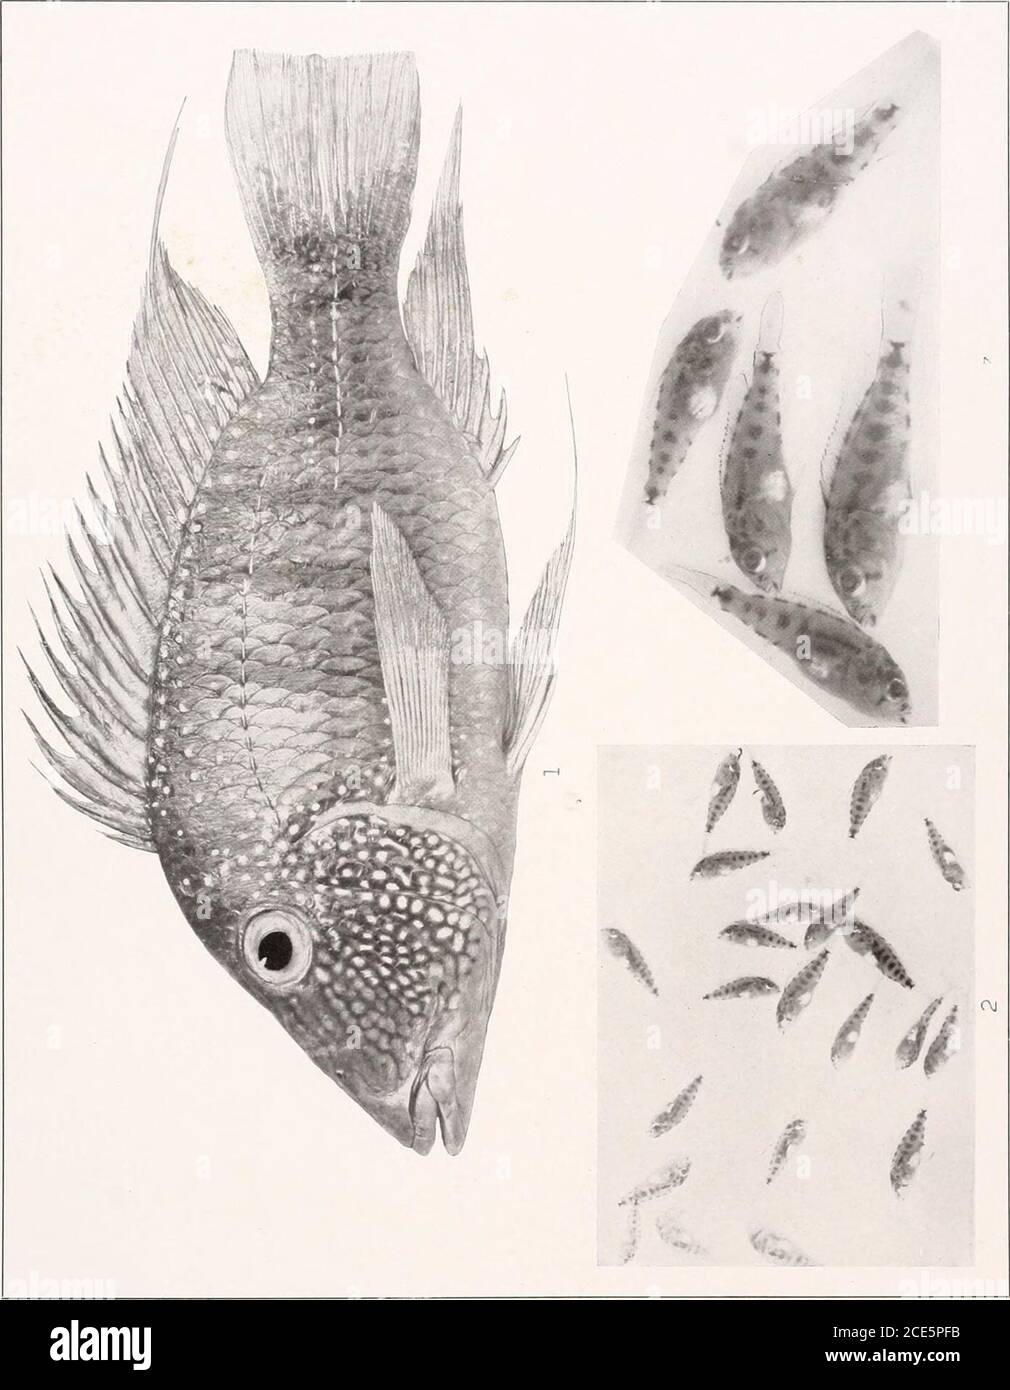 . Los peces de agua dulce de la Guayana Británica, incluyendo un estudio de la agrupación ecológica de especies y la relación de la fauna de la meseta con la de las tierras bajas. NannacharabimaculataEigenmann. (Tipo i 57 mm. No.2304. 2. &quide?ispotaroensisTLiGENMA2iN.(Tipo.) 140 mm. No 2407. :!. Geophagus surinamensis (Bloch). 17) mm. No 2324. X E-i o &GT; o W z PS &lt; o w. o p c c o H Memorias Carnegie Museum, Vol. V. Plate LXVIll Foto de stock